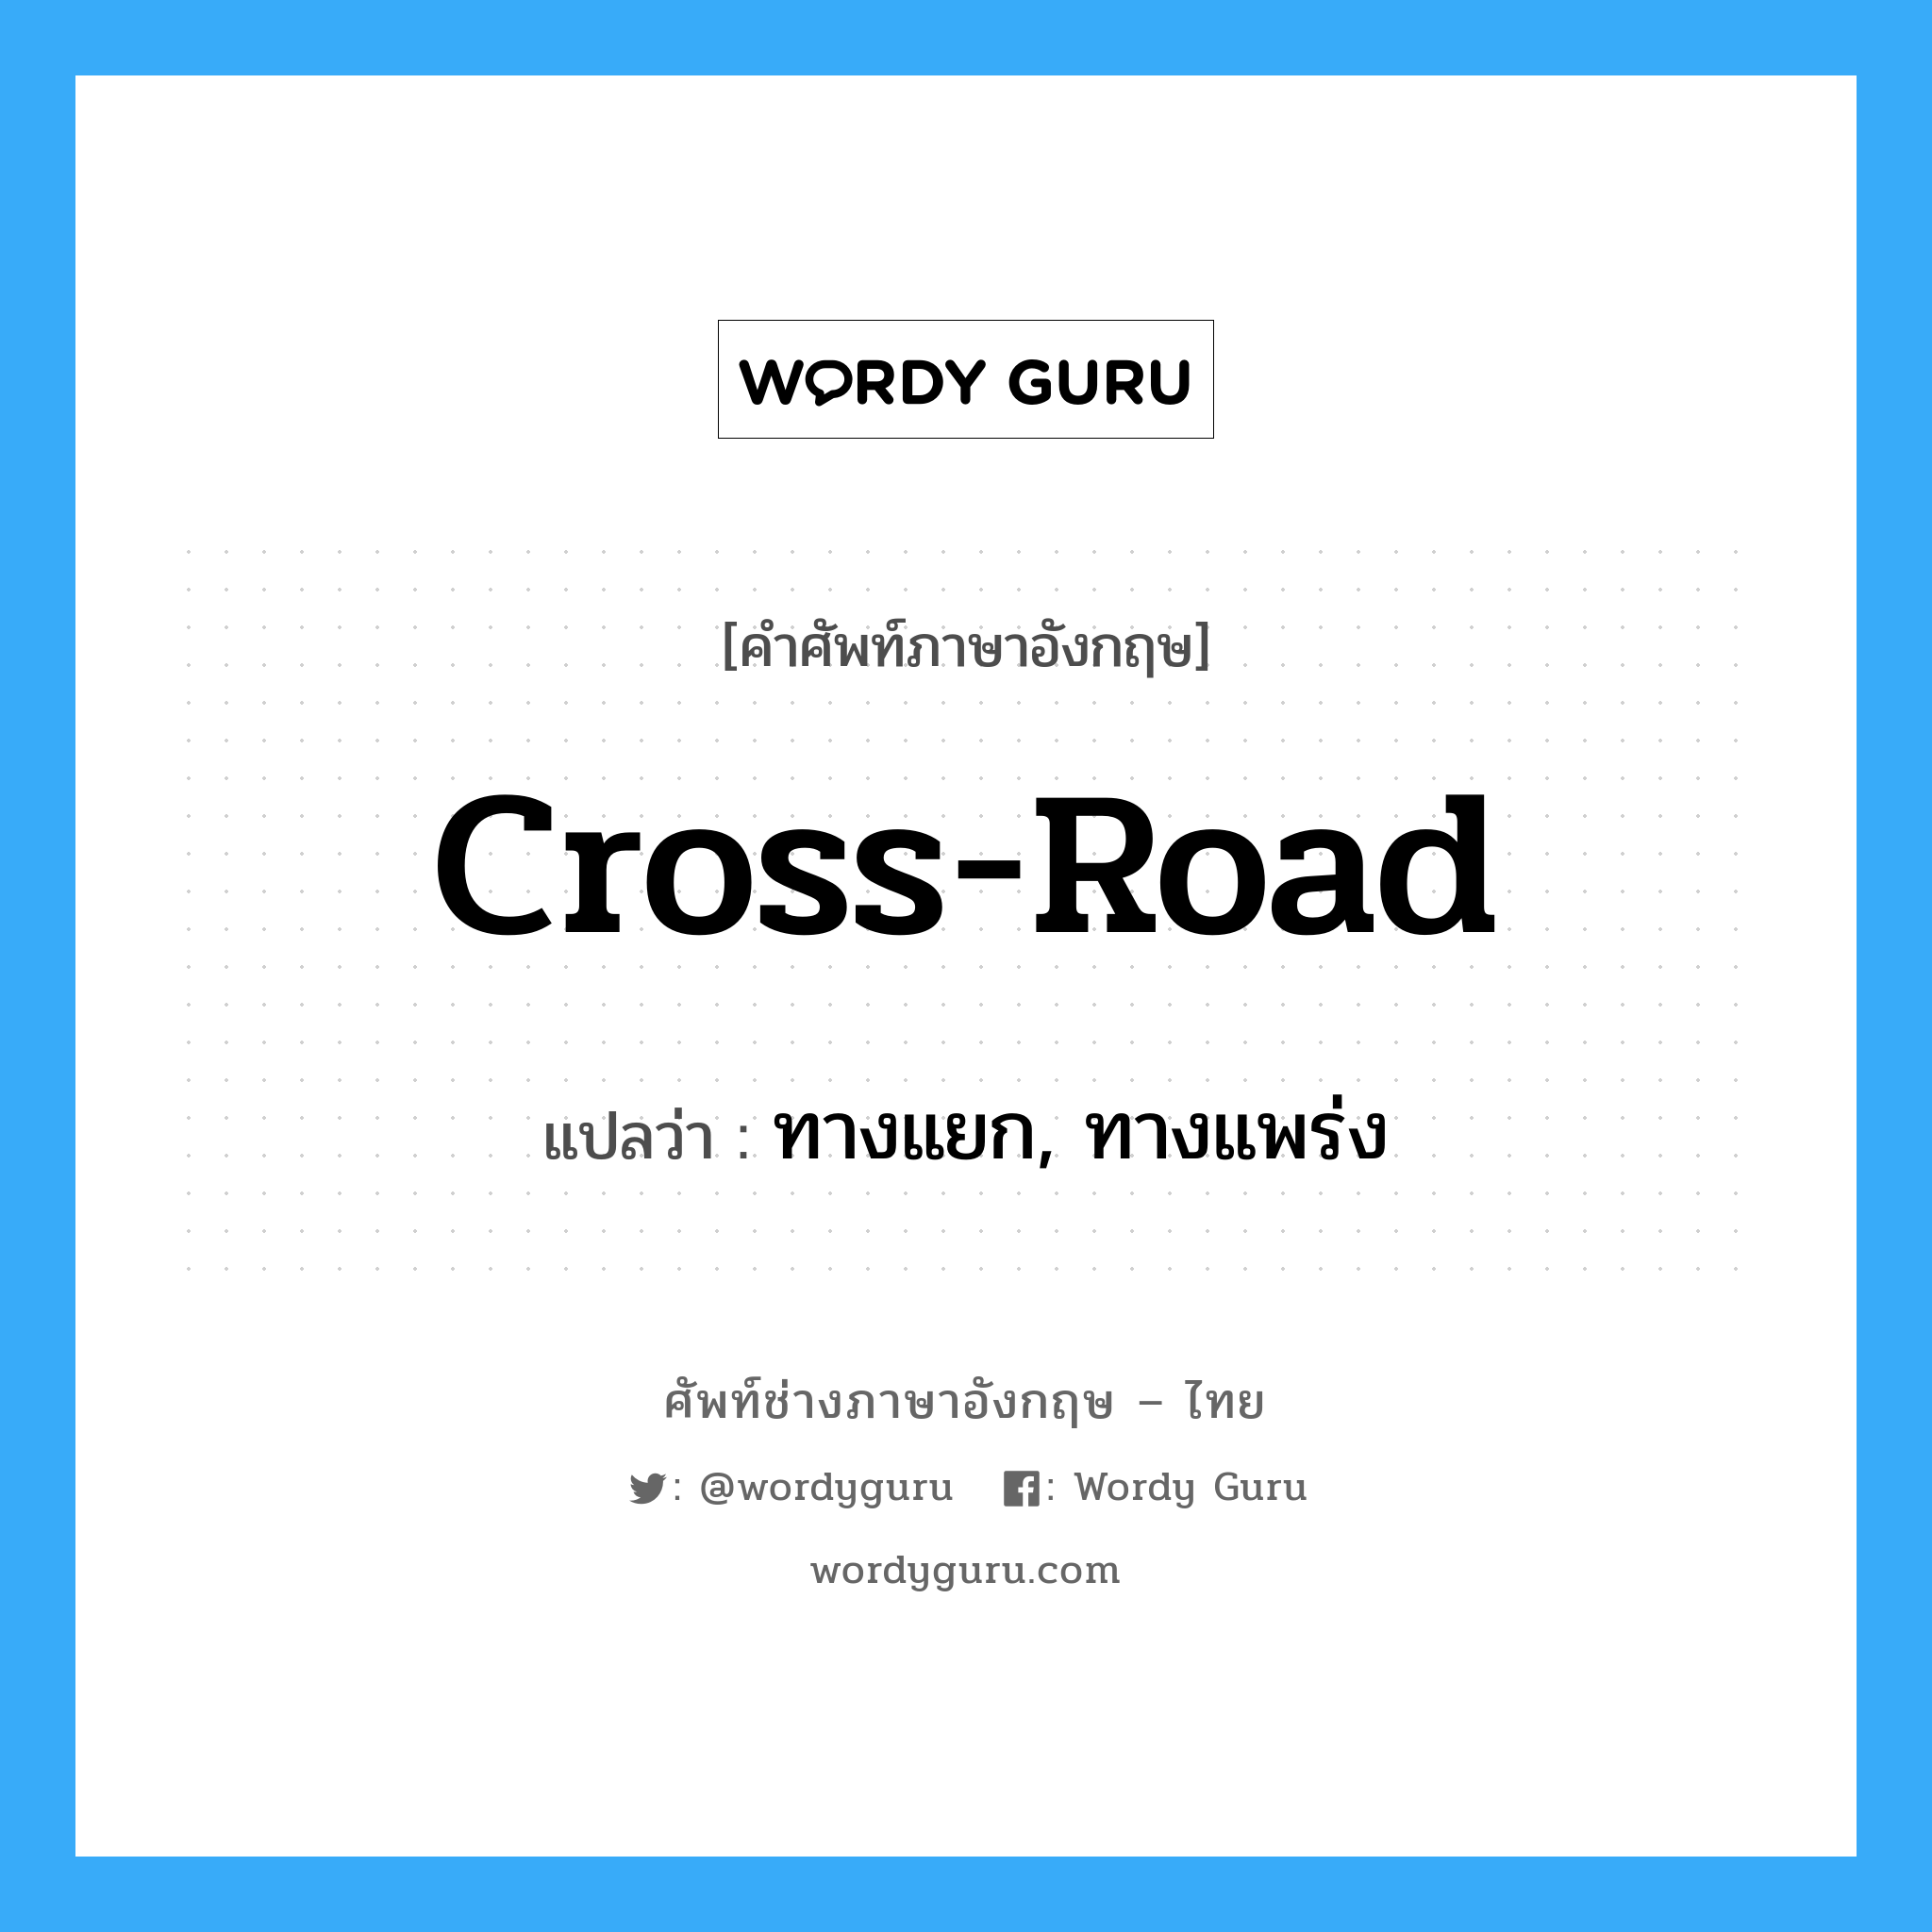 ทางแยก, ทางแพร่ง ภาษาอังกฤษ?, คำศัพท์ช่างภาษาอังกฤษ - ไทย ทางแยก, ทางแพร่ง คำศัพท์ภาษาอังกฤษ ทางแยก, ทางแพร่ง แปลว่า cross-road